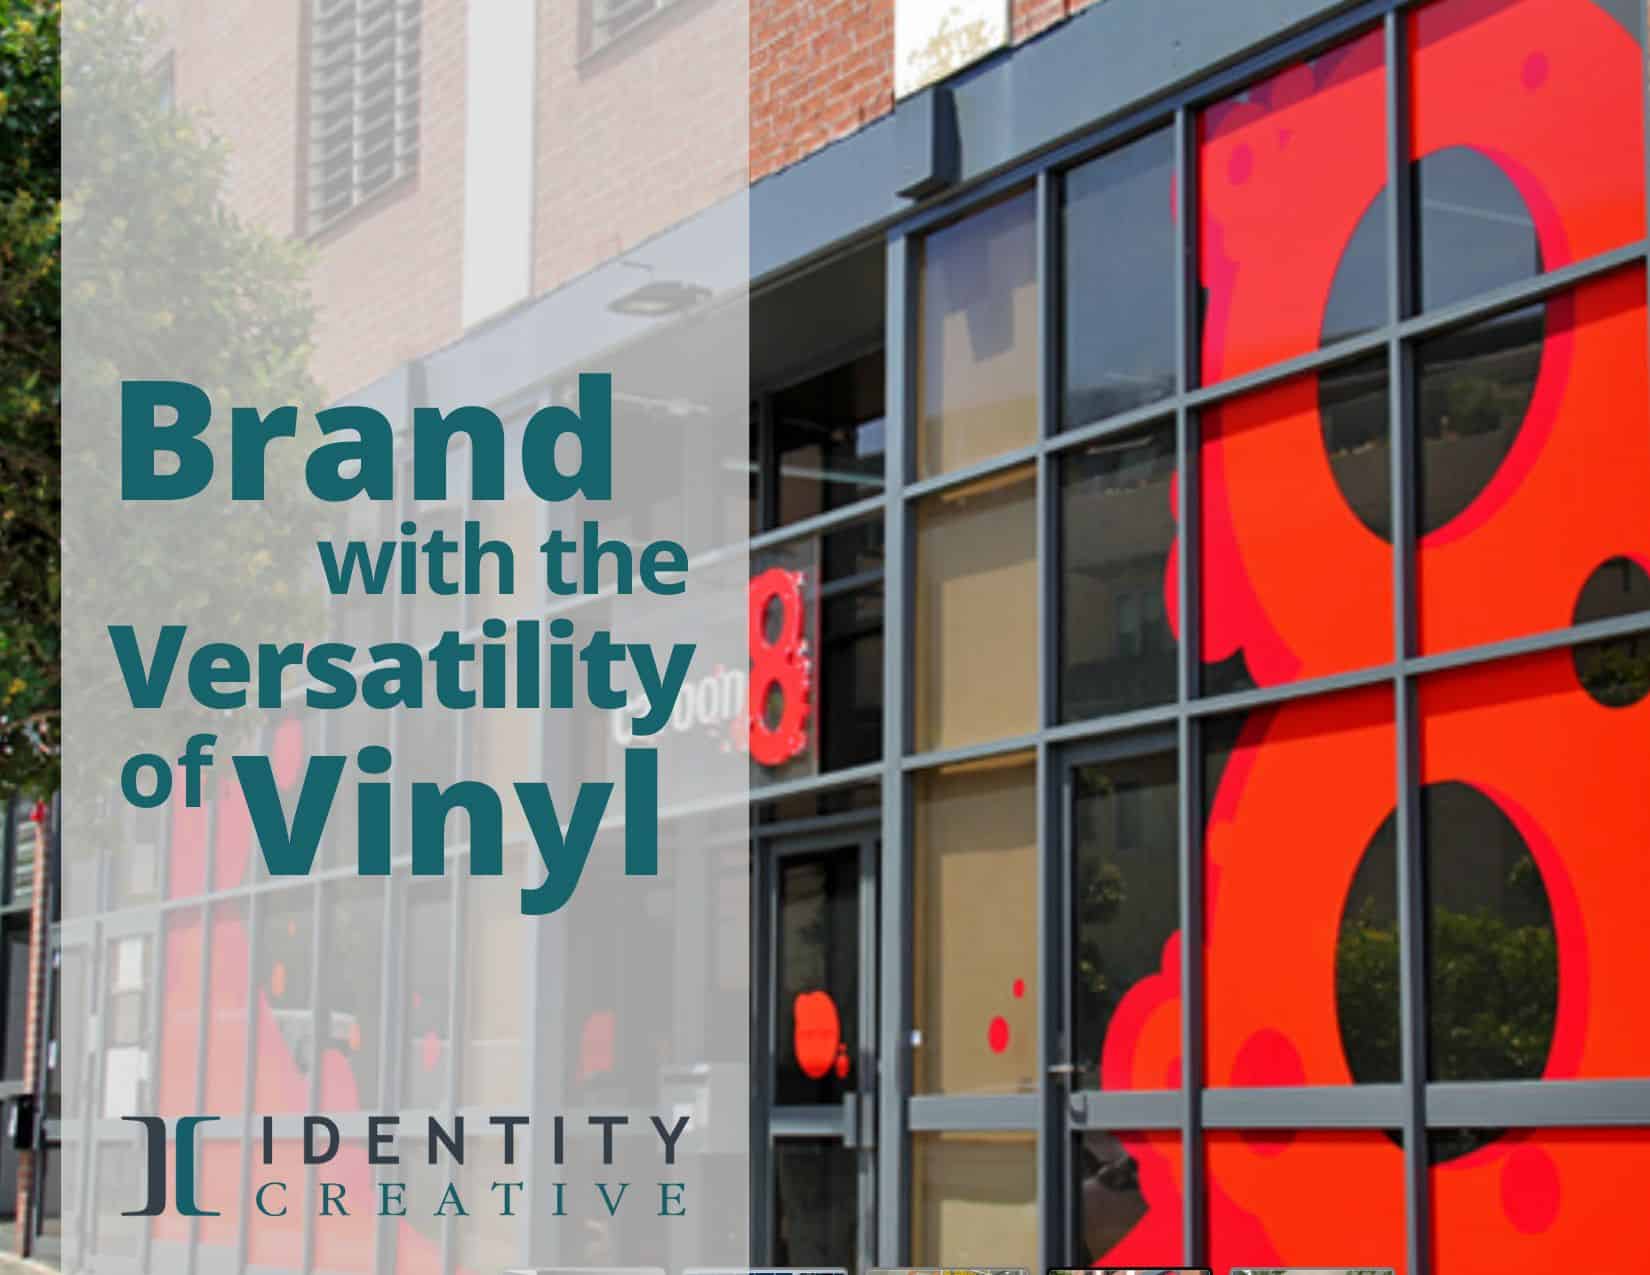 Branding with the Versatility of Vinyl